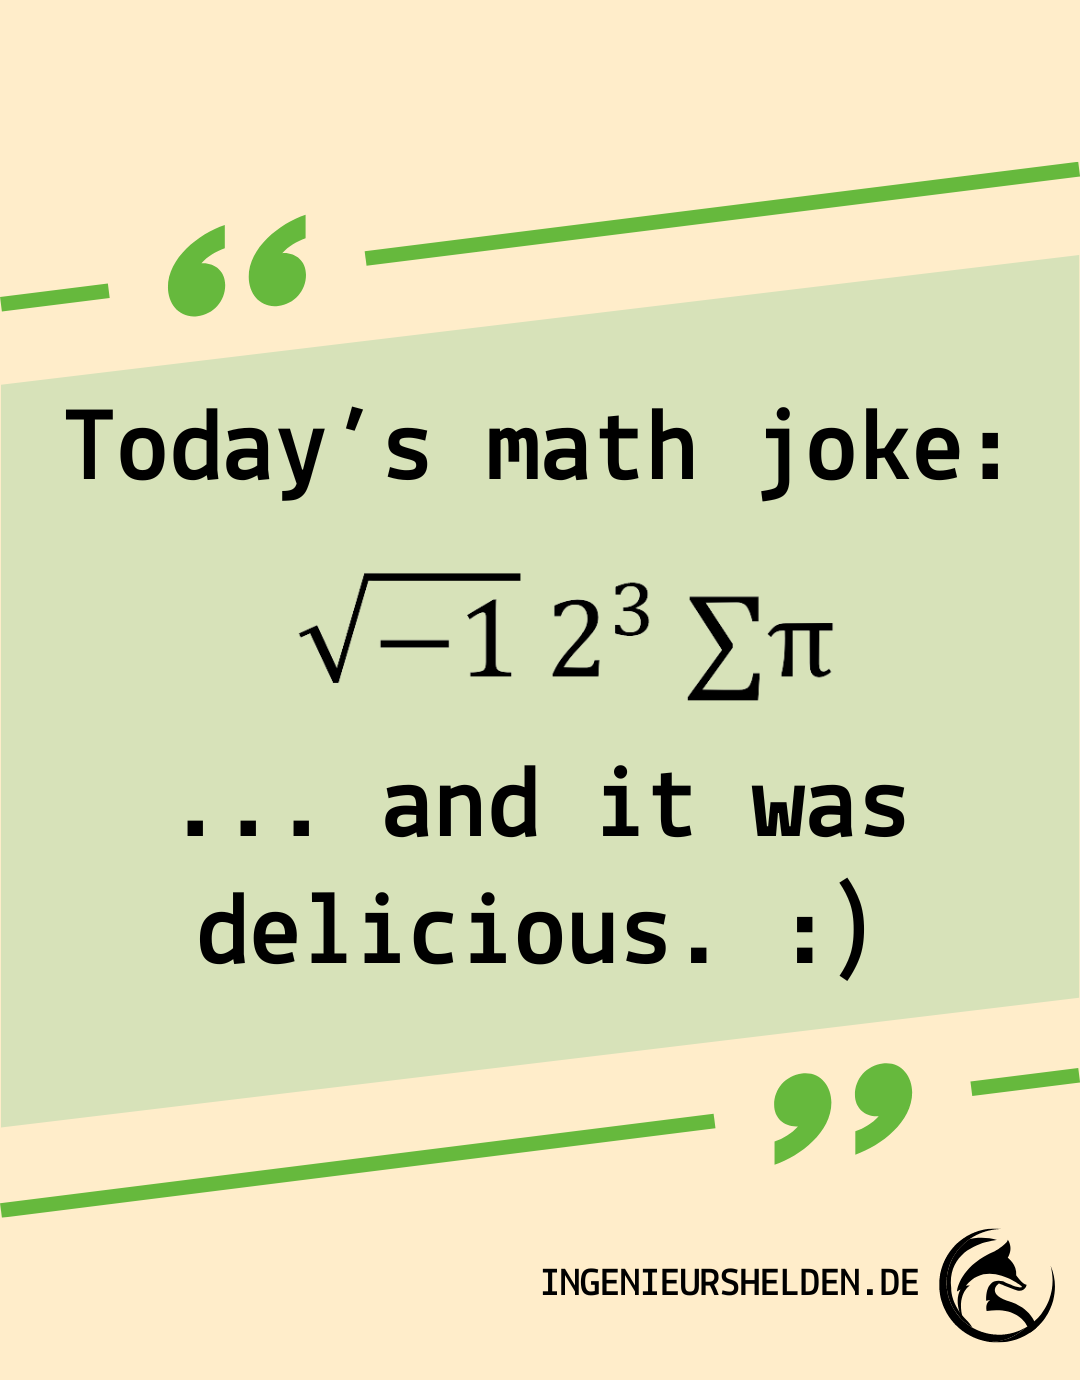 Math joke of the day